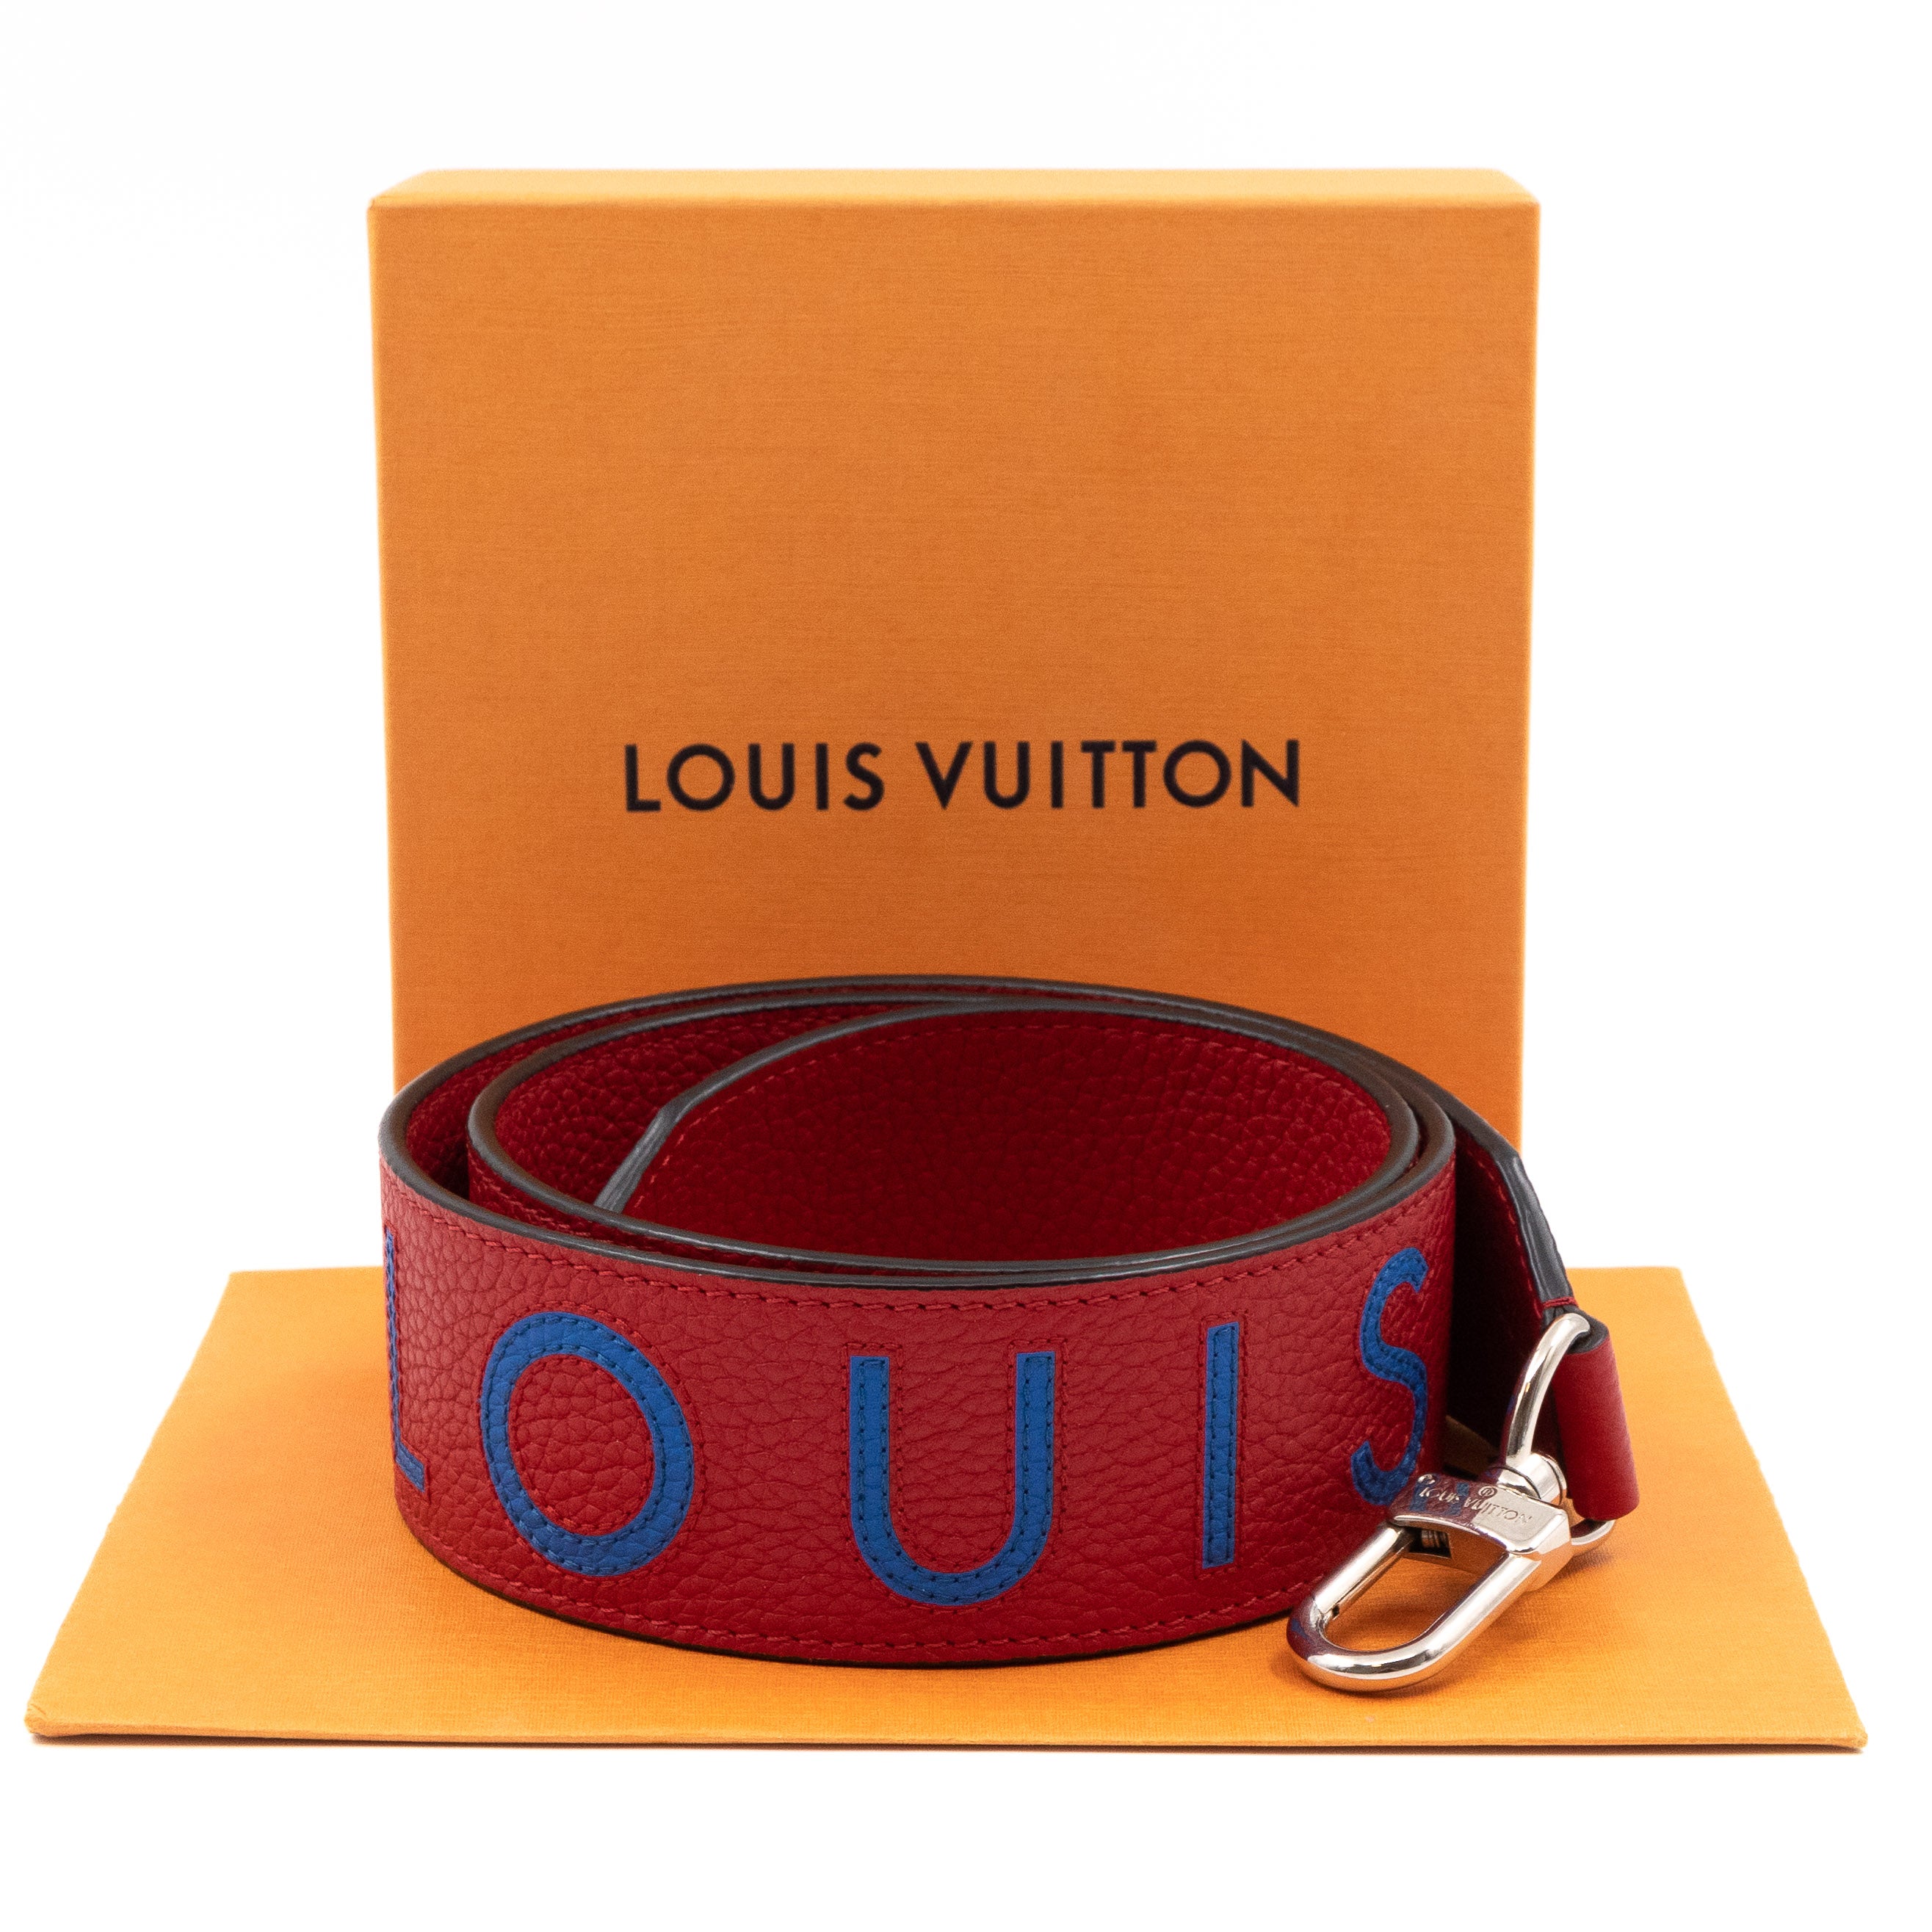 Louis Vuitton – Louis Vuitton Bandoulière Shoulder Strap Red